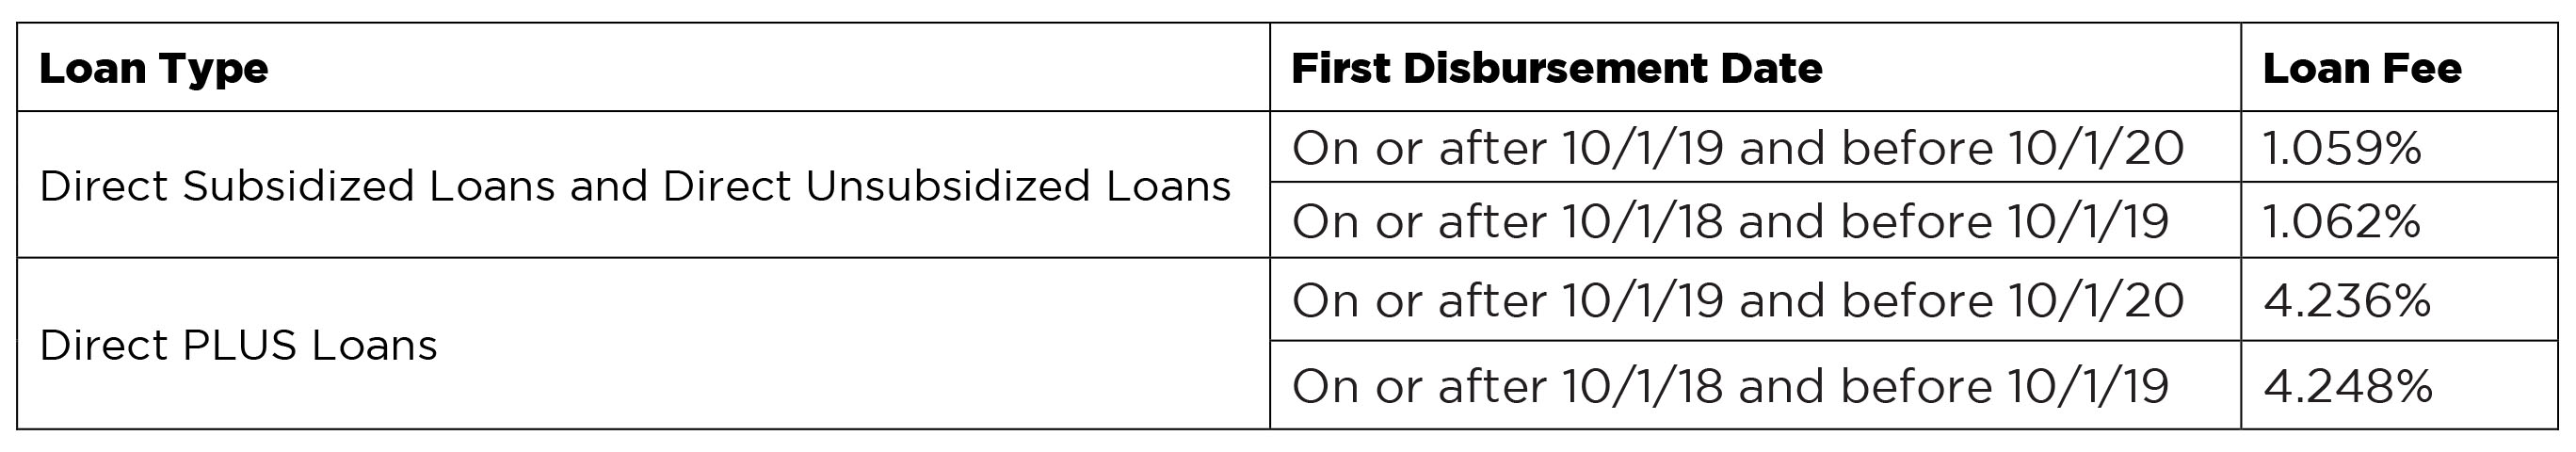 Federal Loan Origination Fees